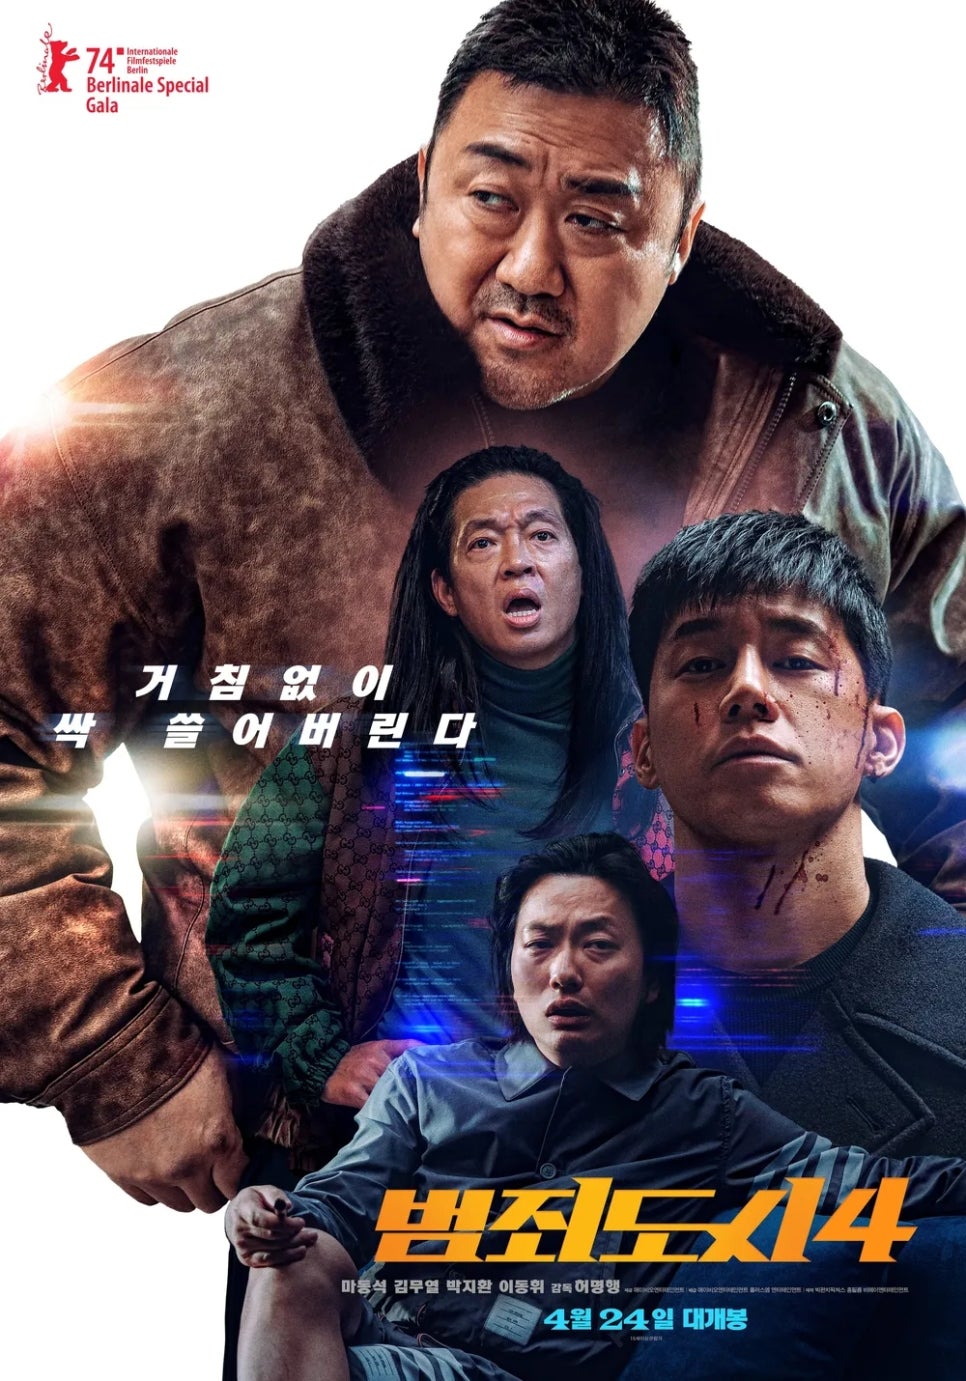 한국 영화 시리즈 최초로 3편 연속 천만관객 동원한 범죄도시 시리즈